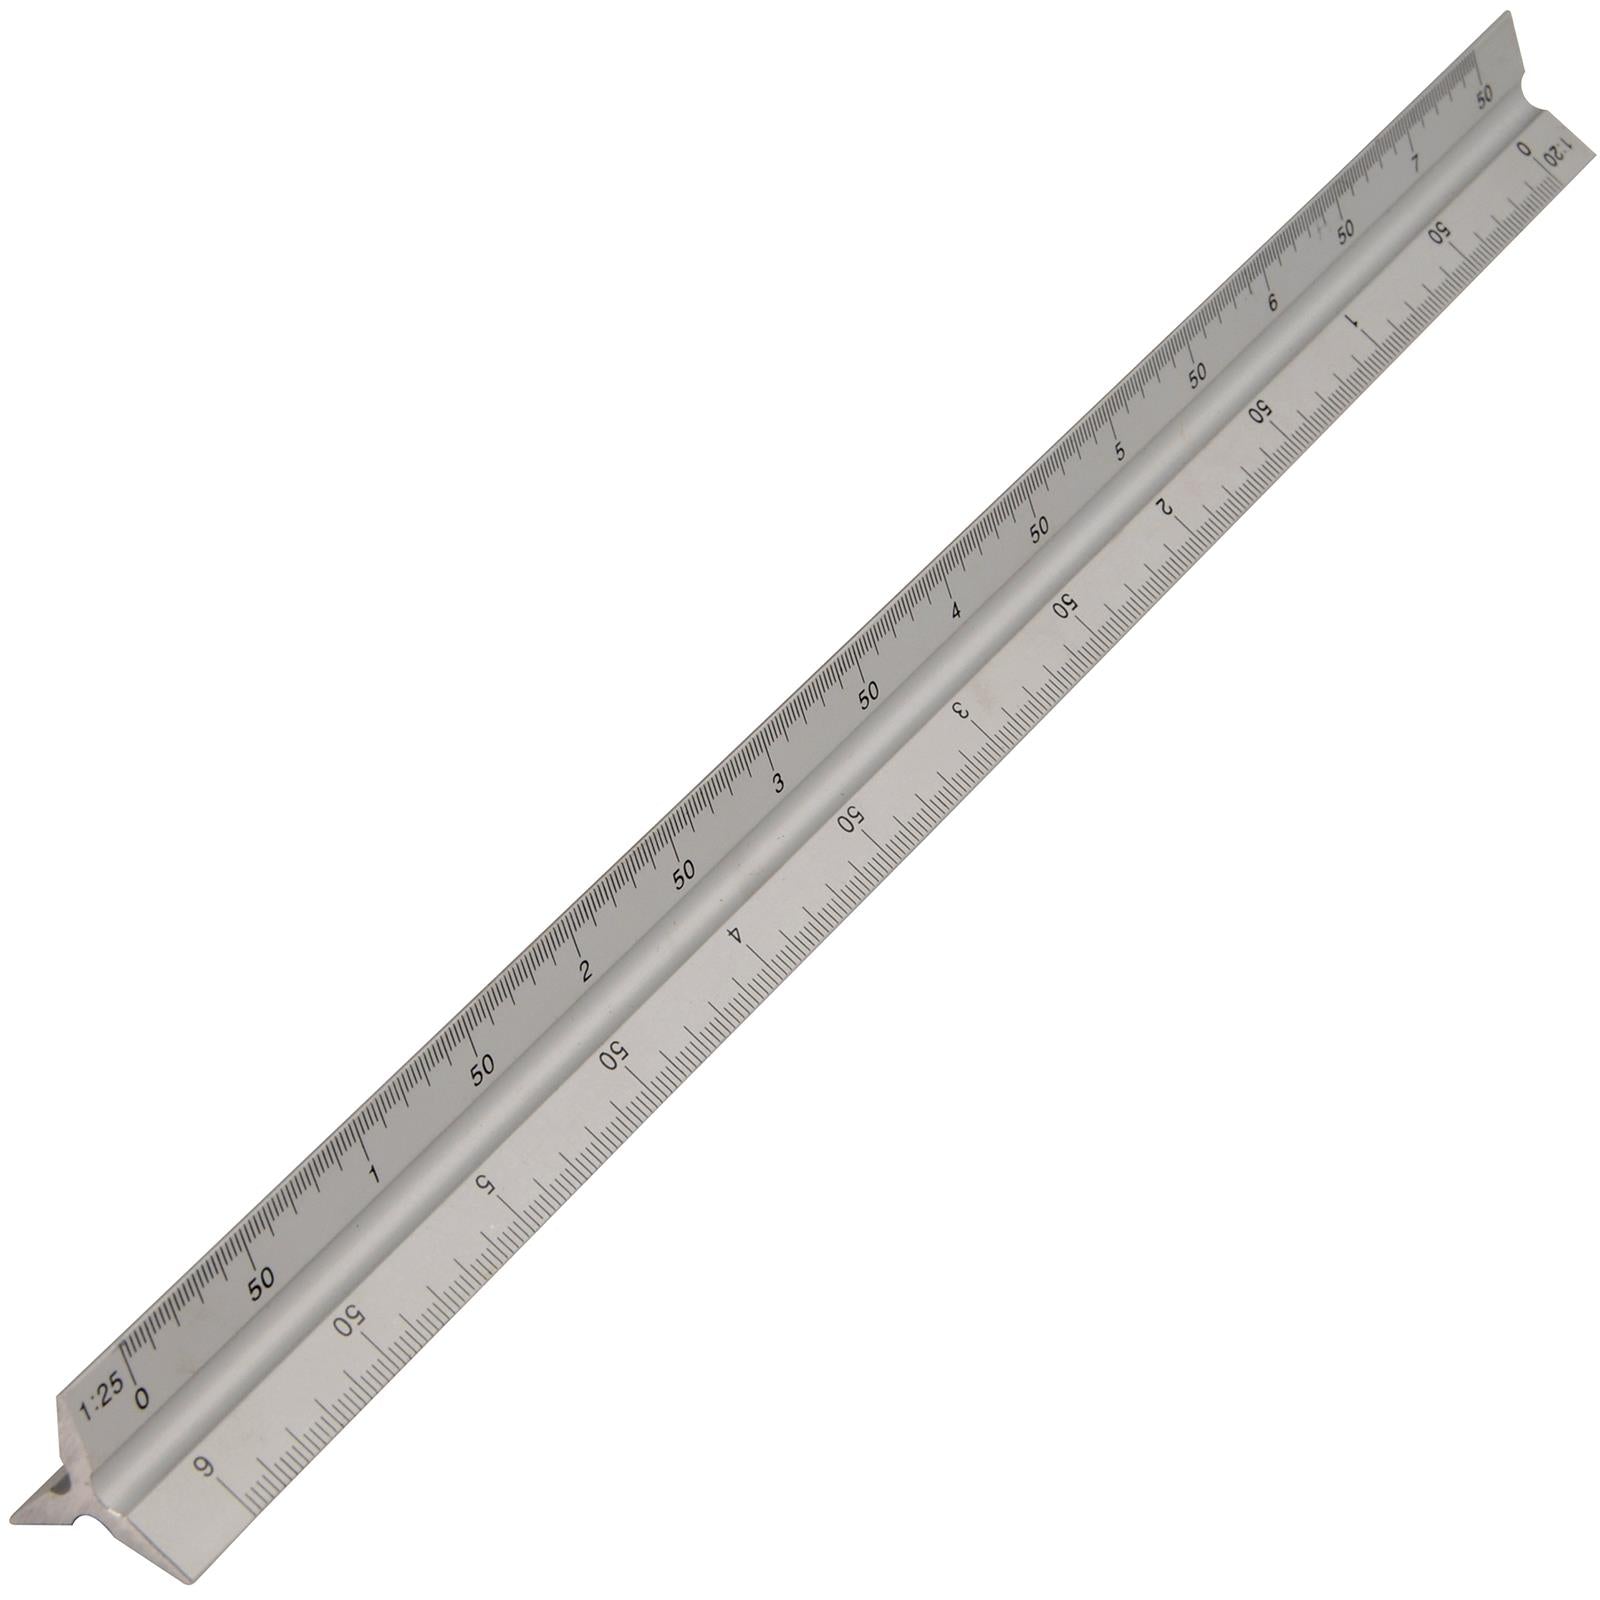 Silverline 300mm Aluminium Scale Tri Rule Metric Measuring Triangular Ruler